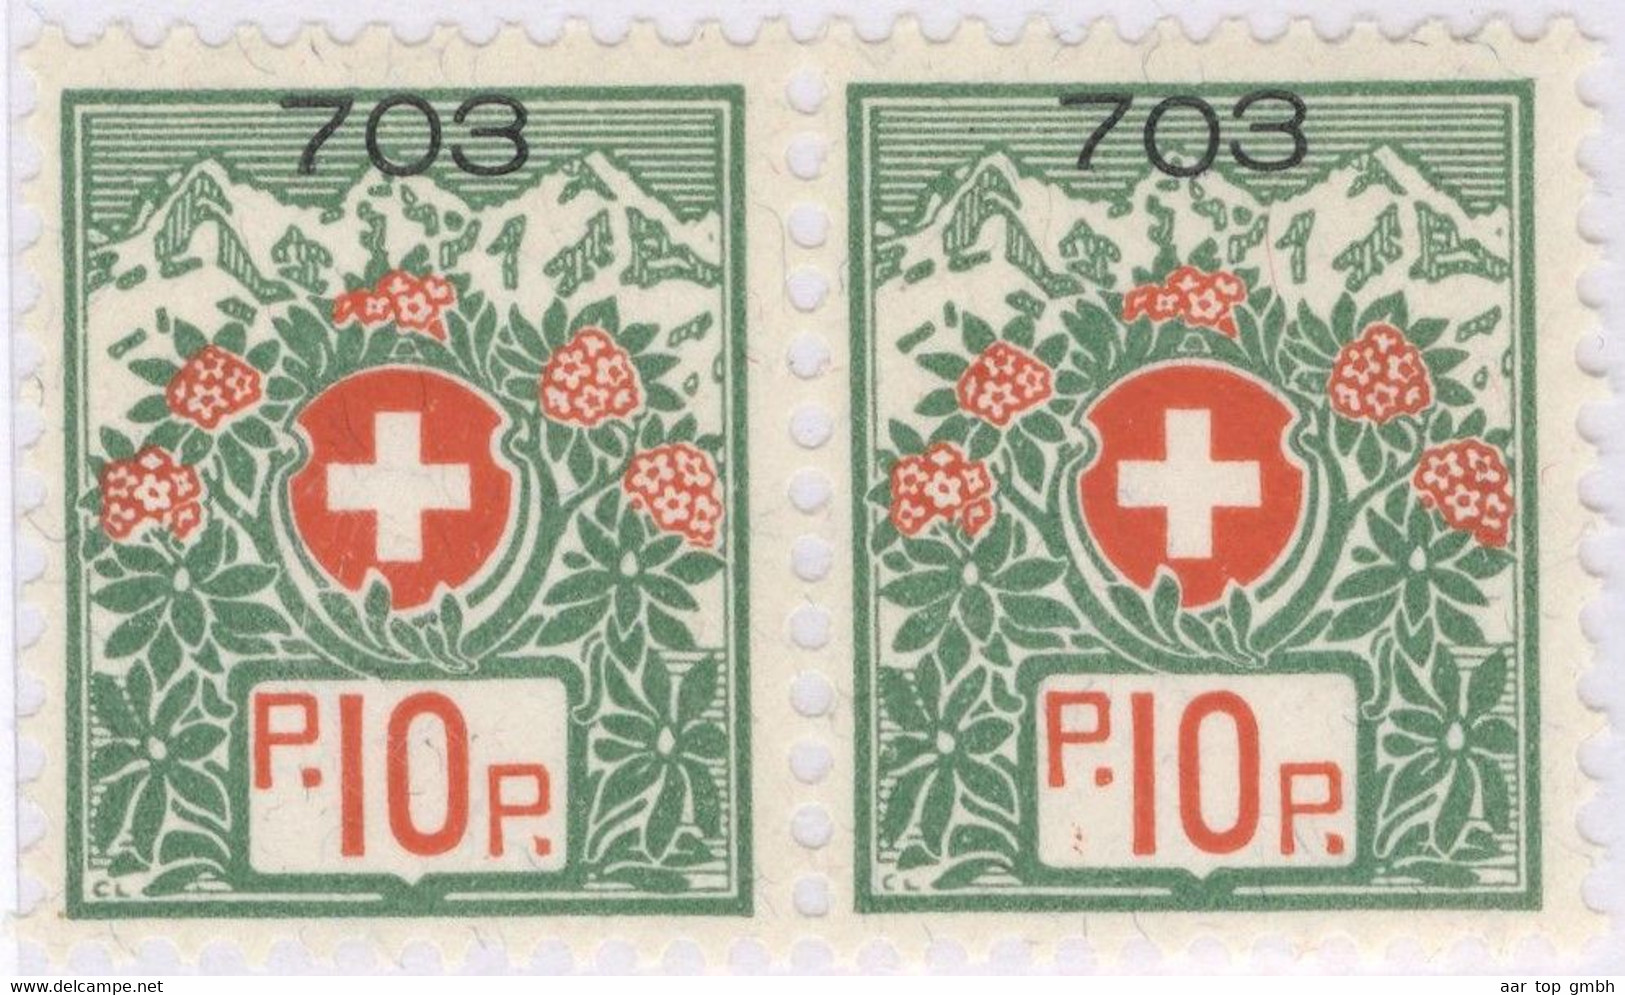 Schweiz Portofreiheit Zu#12A Paar ** Postfrisch 10 Rp. Gr#703 Heil-+Pflegeanstallt St.Urban Ausgeliefert 12500 Stk. - Portofreiheit